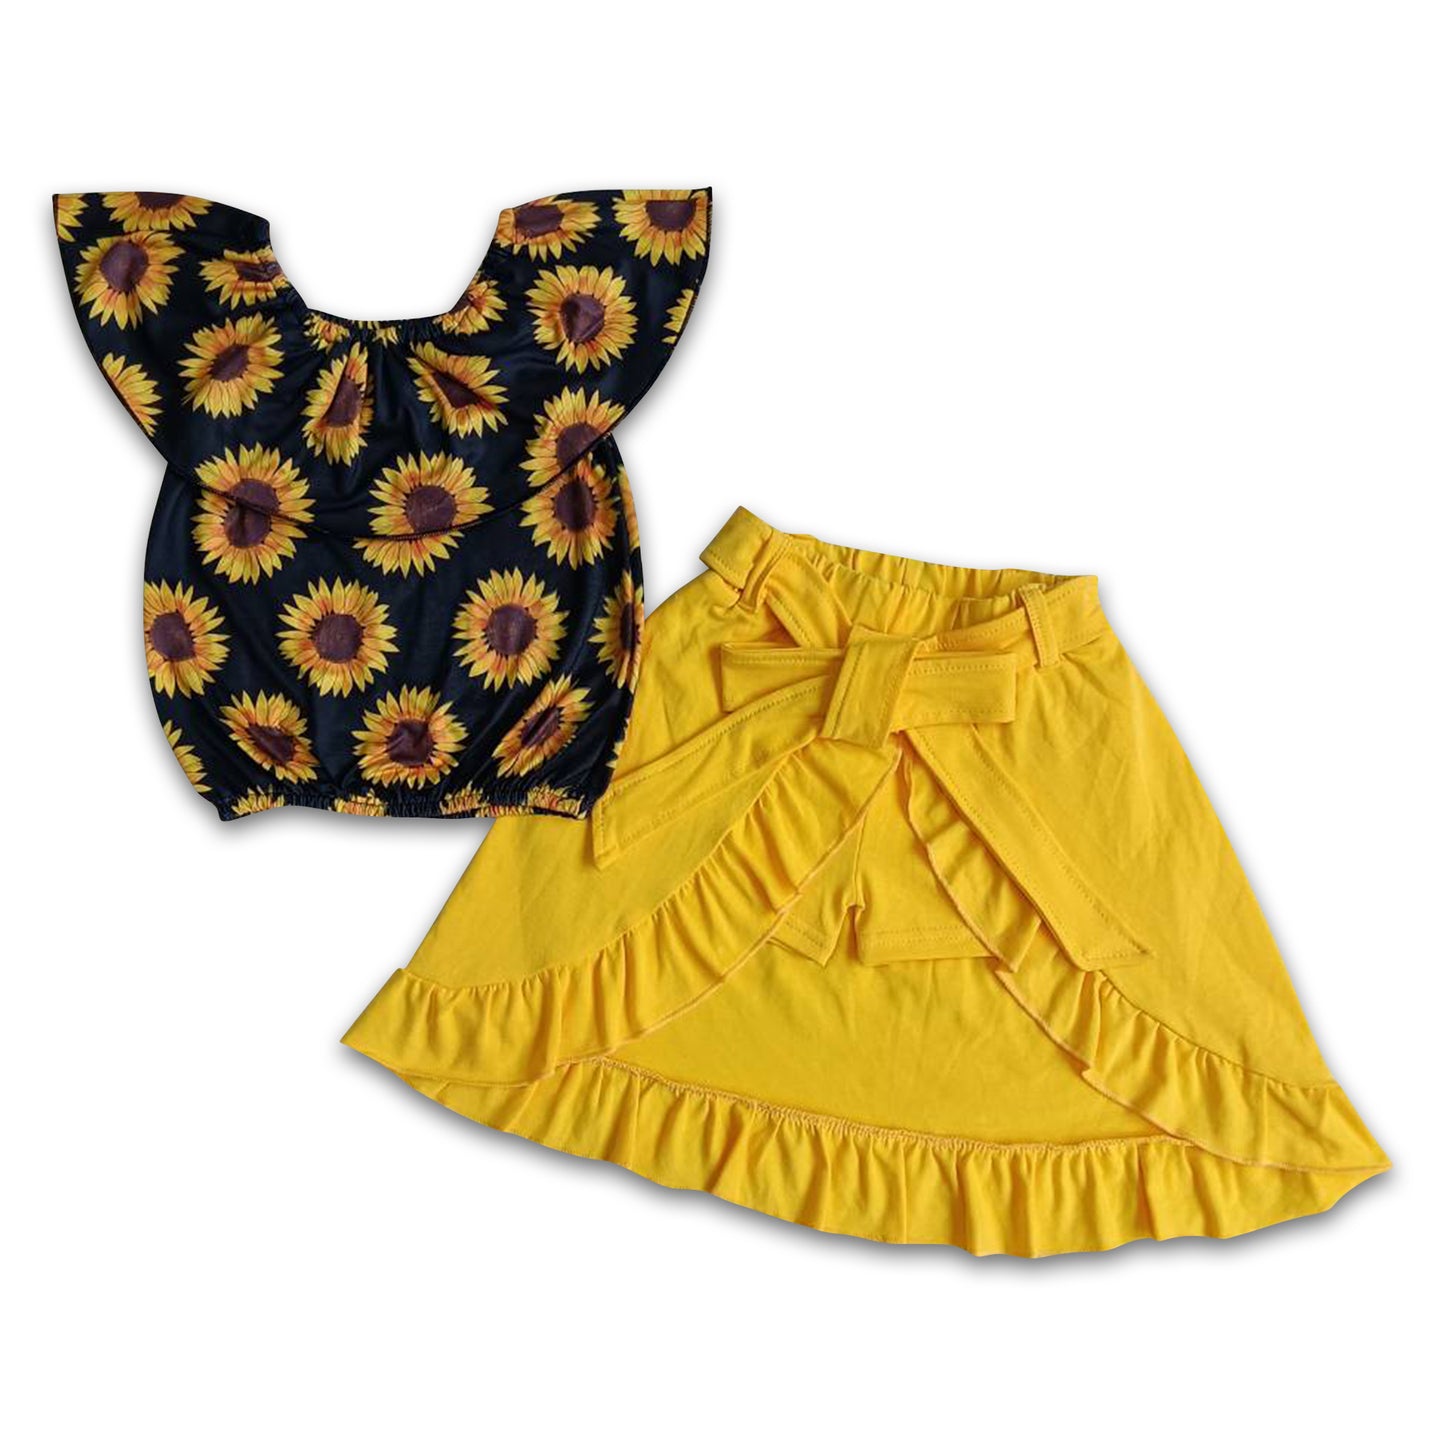 Sunflower shirt match shorts skirt girls summer clothing